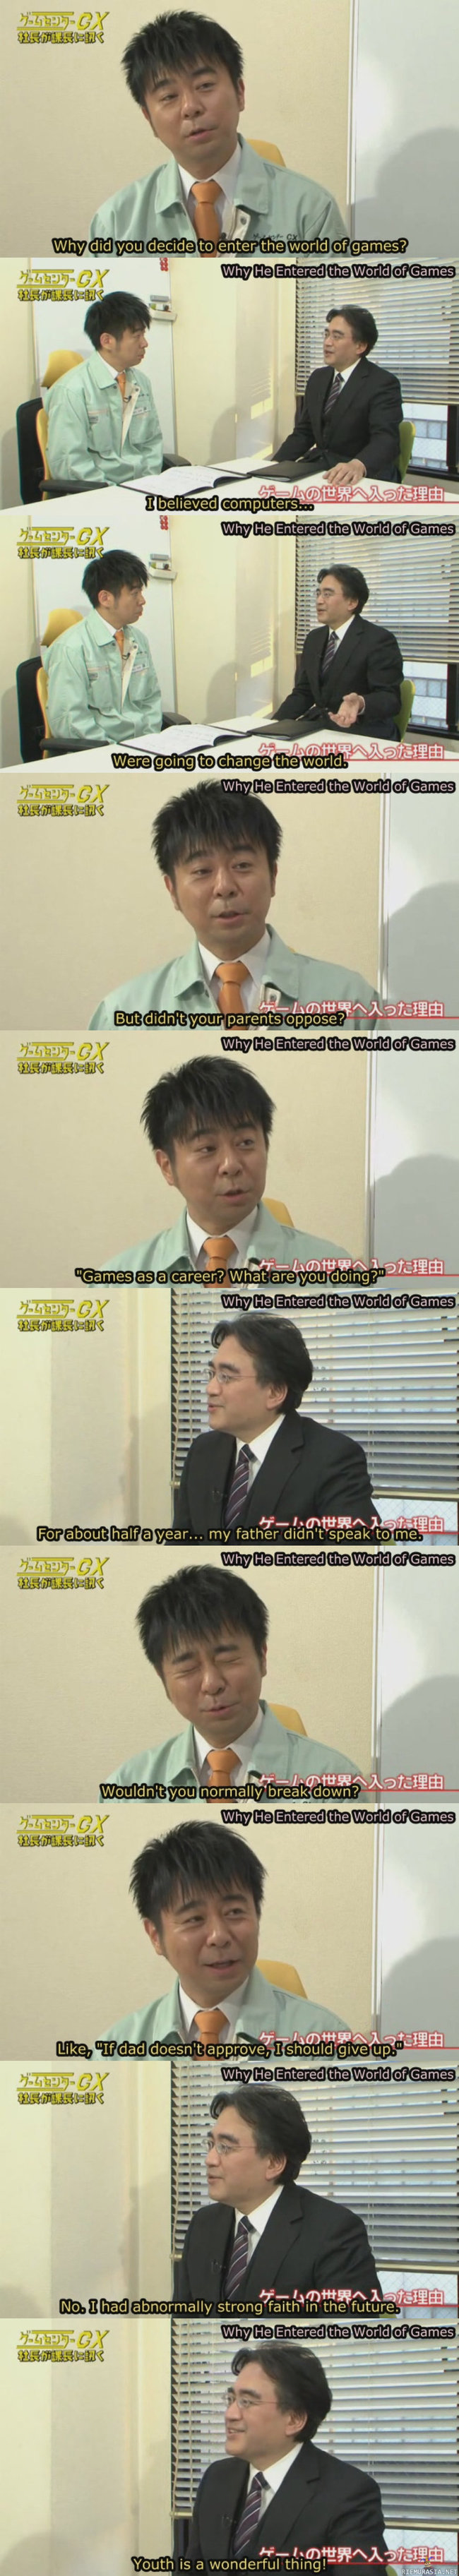 Satoru Iwata ja peliala